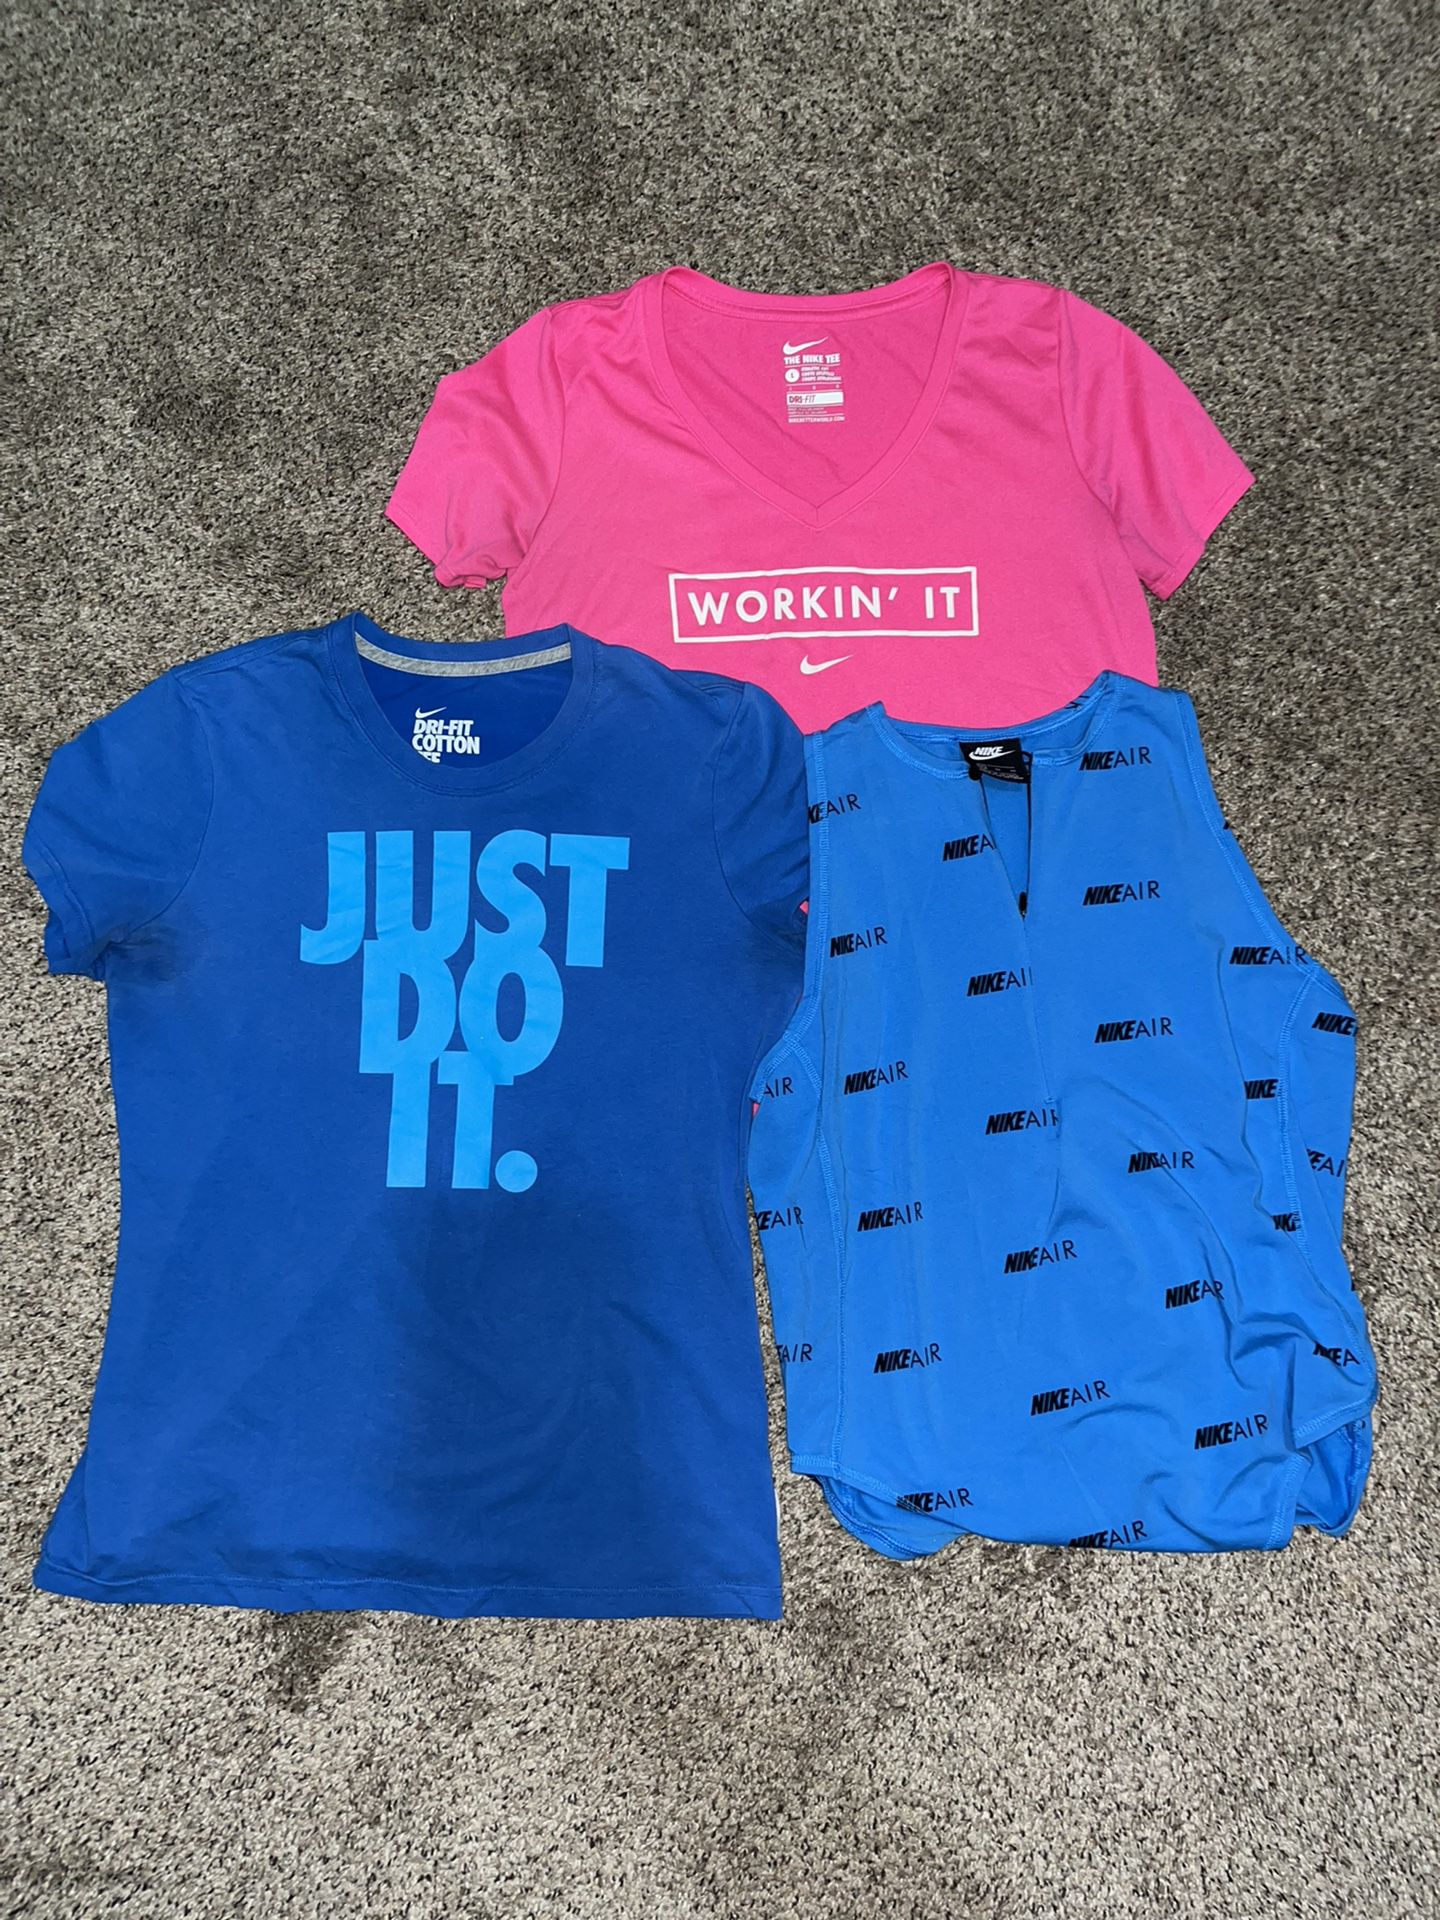 Nike Shirts Women $10